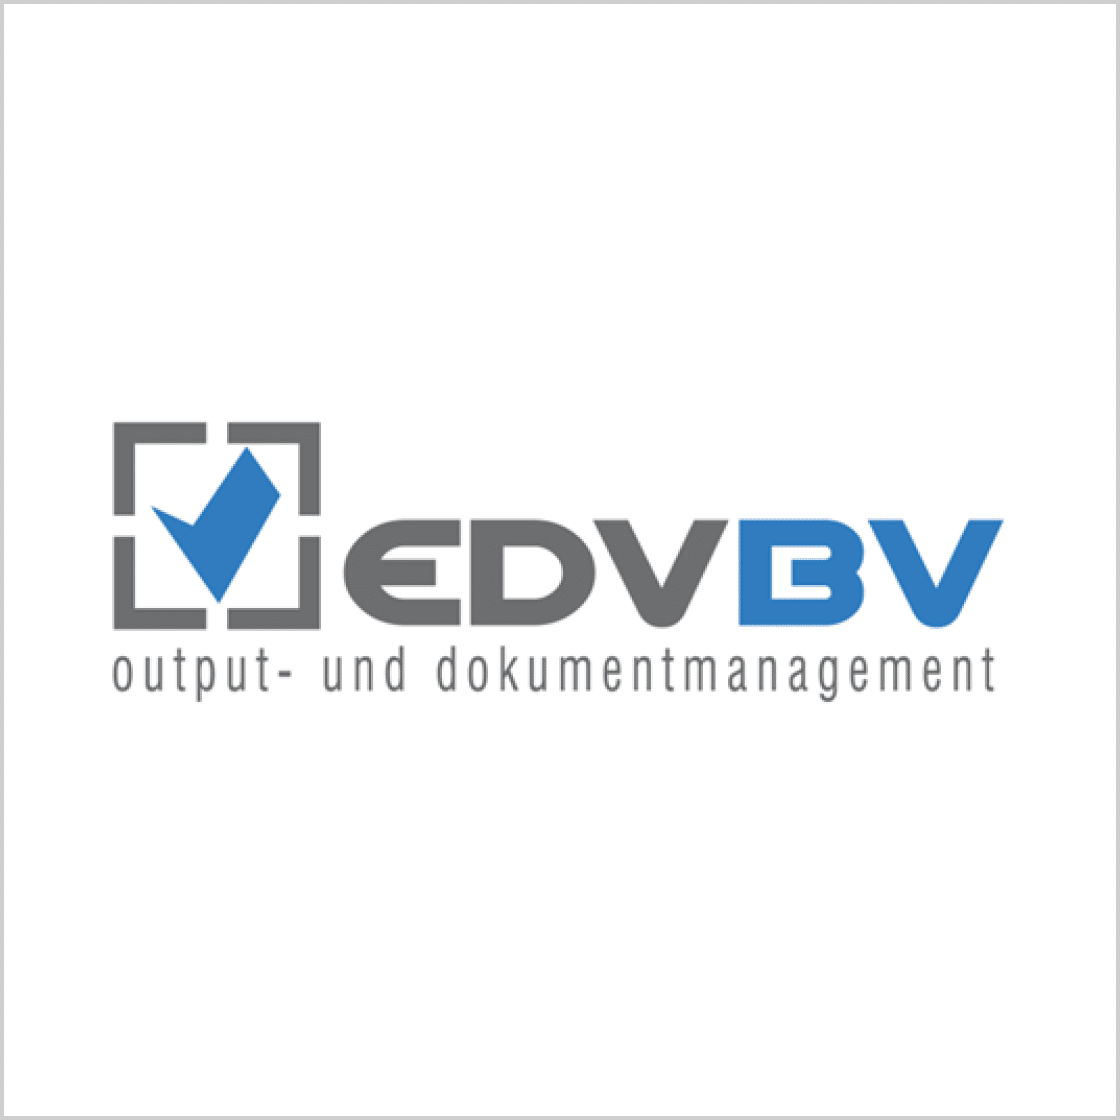 EDV-BV